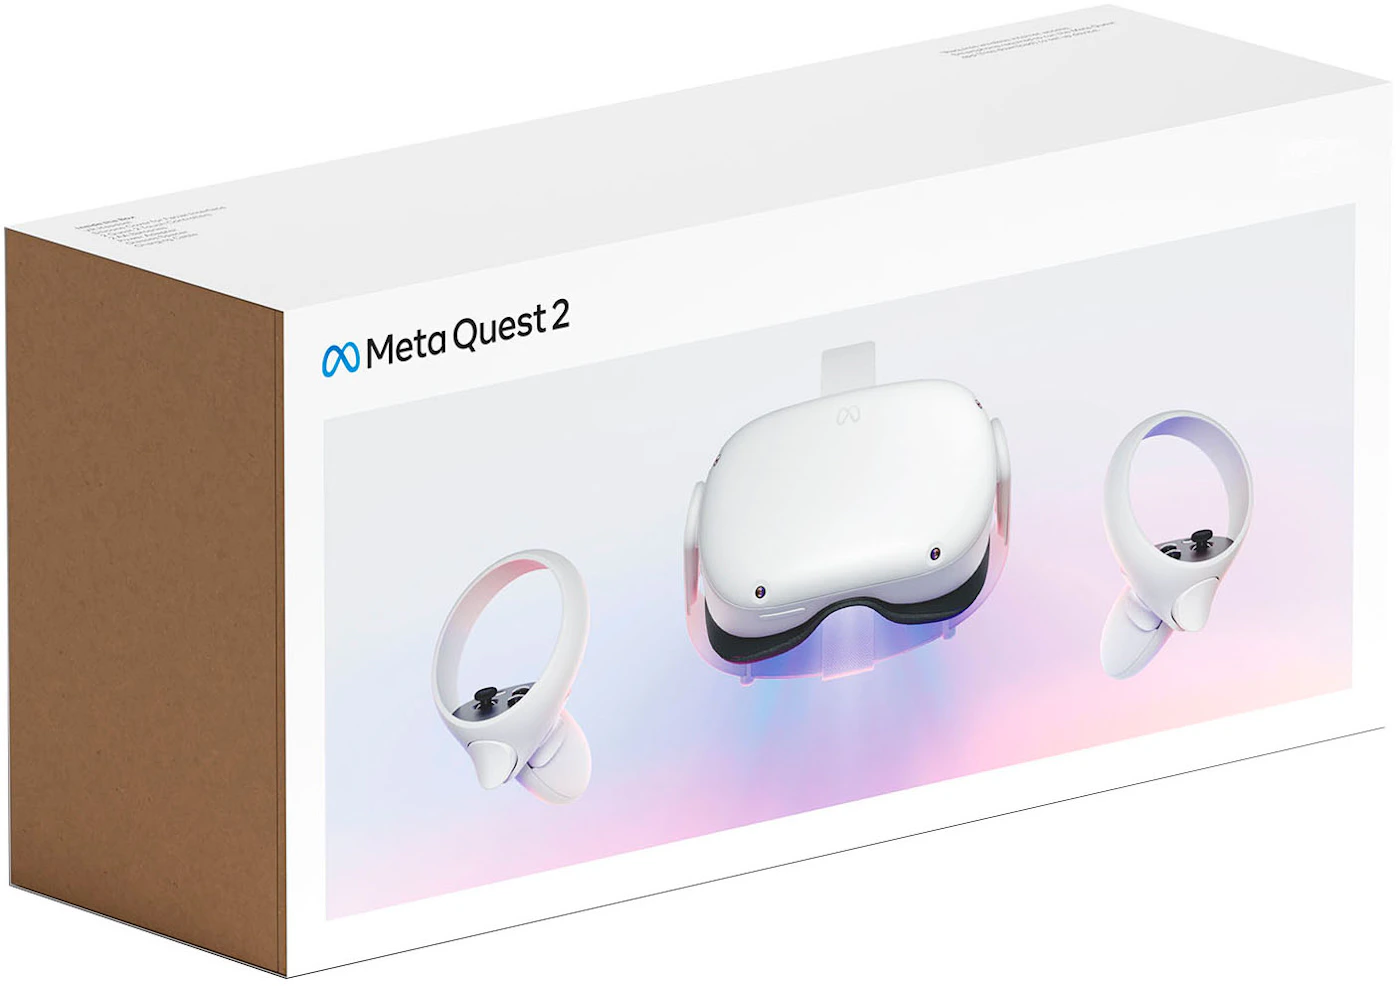 Alquila Meta Quest 2 128 GB Gafas de realidad virtual desde 10,90